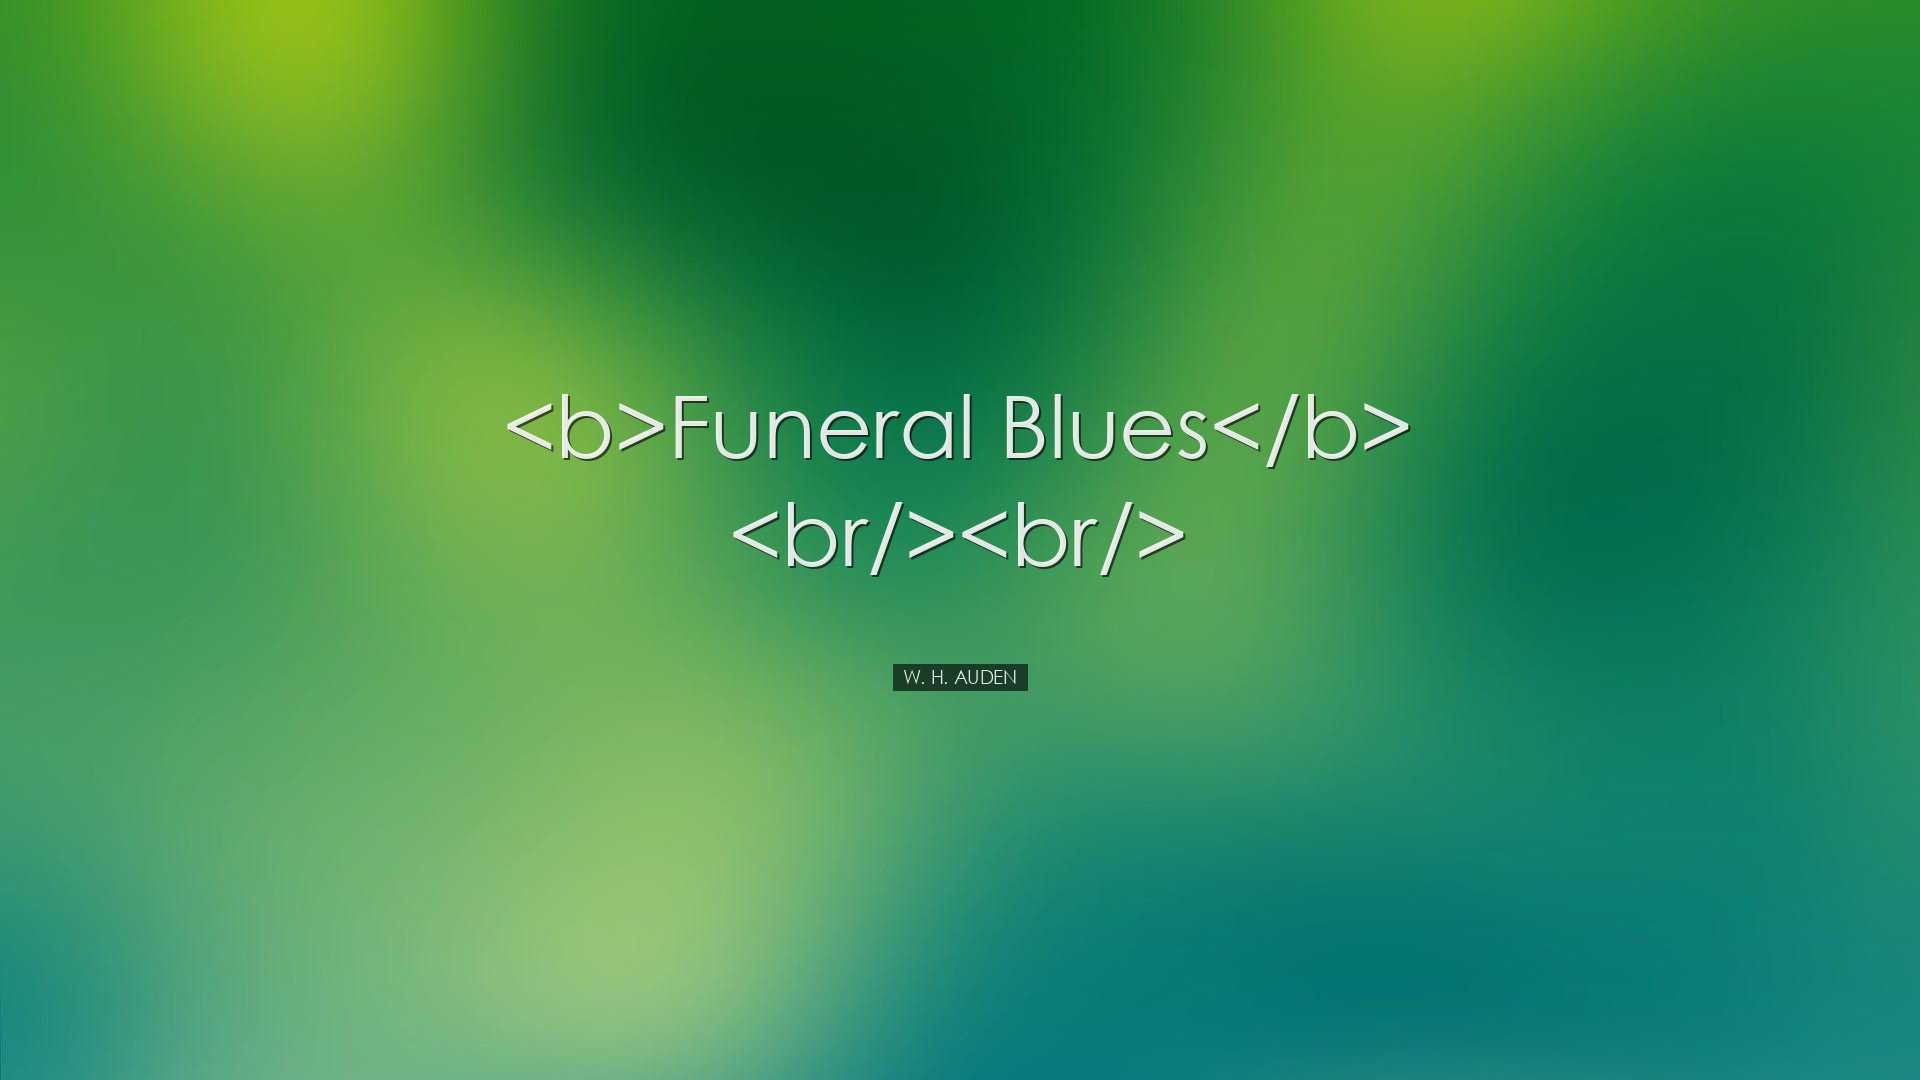 Funeral Blues  - W. H. Auden